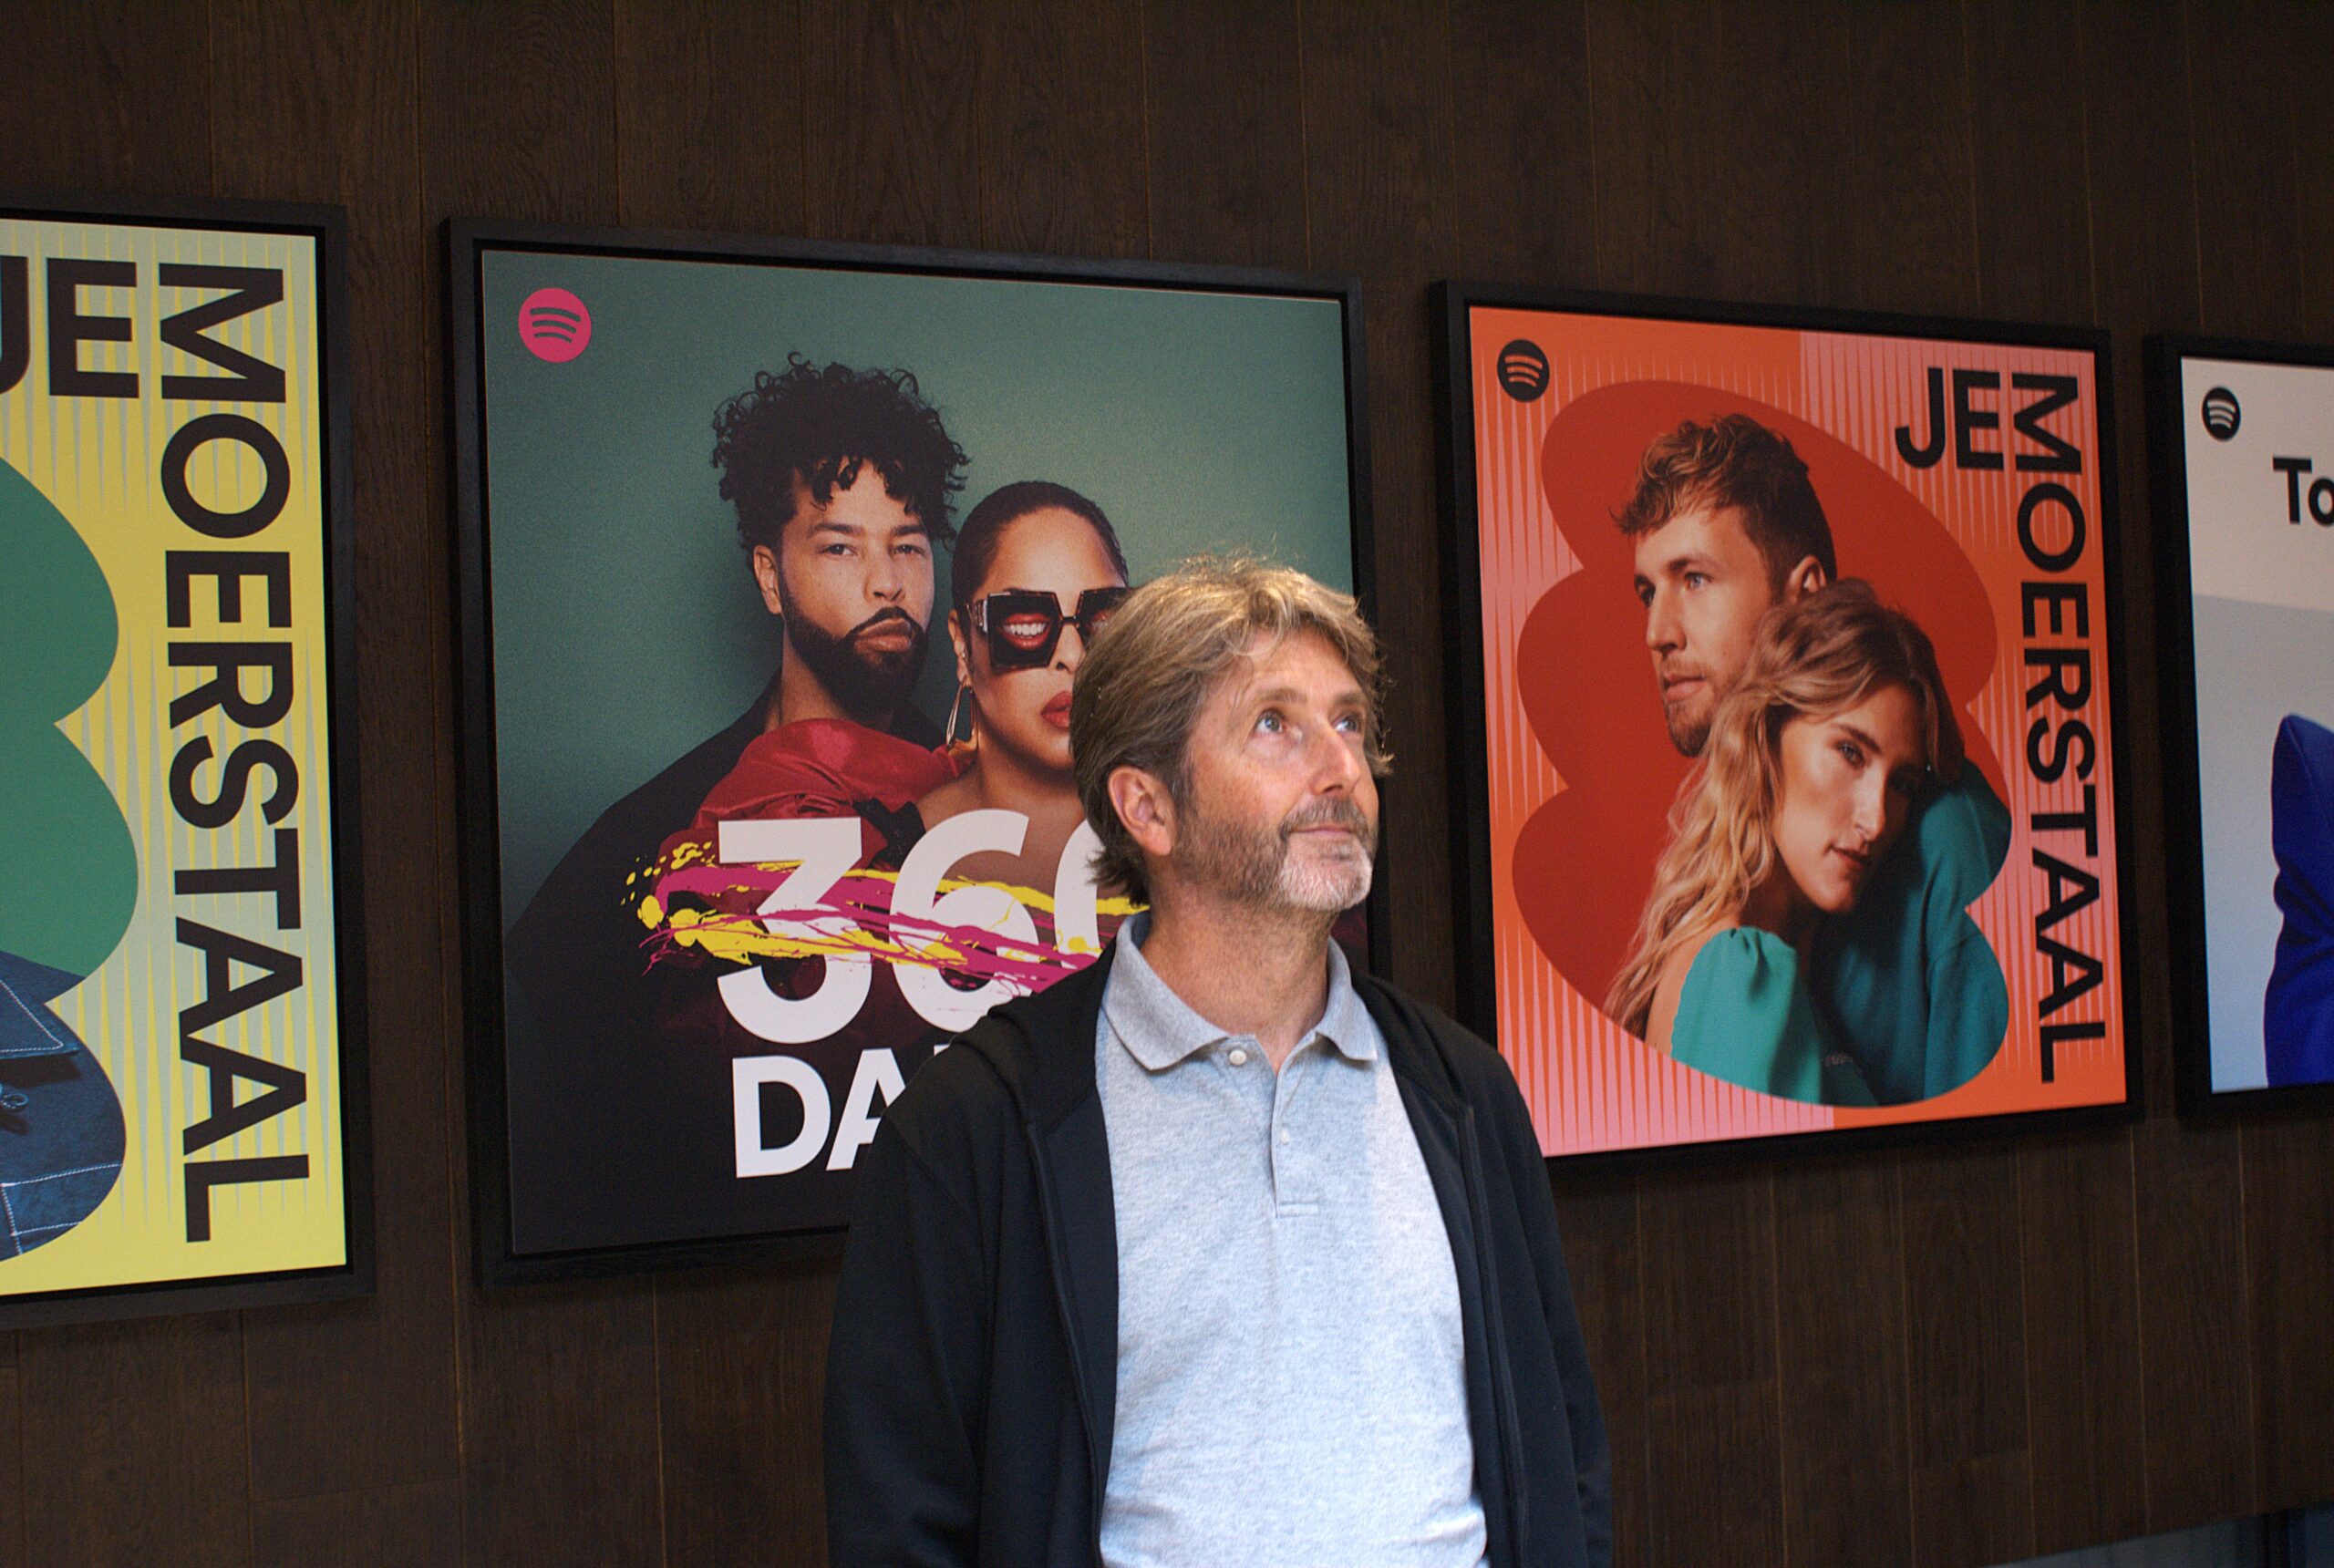 Antoine Monin poseert voor een serie posters van enkele populaire Spotify-playlists in Nederland.